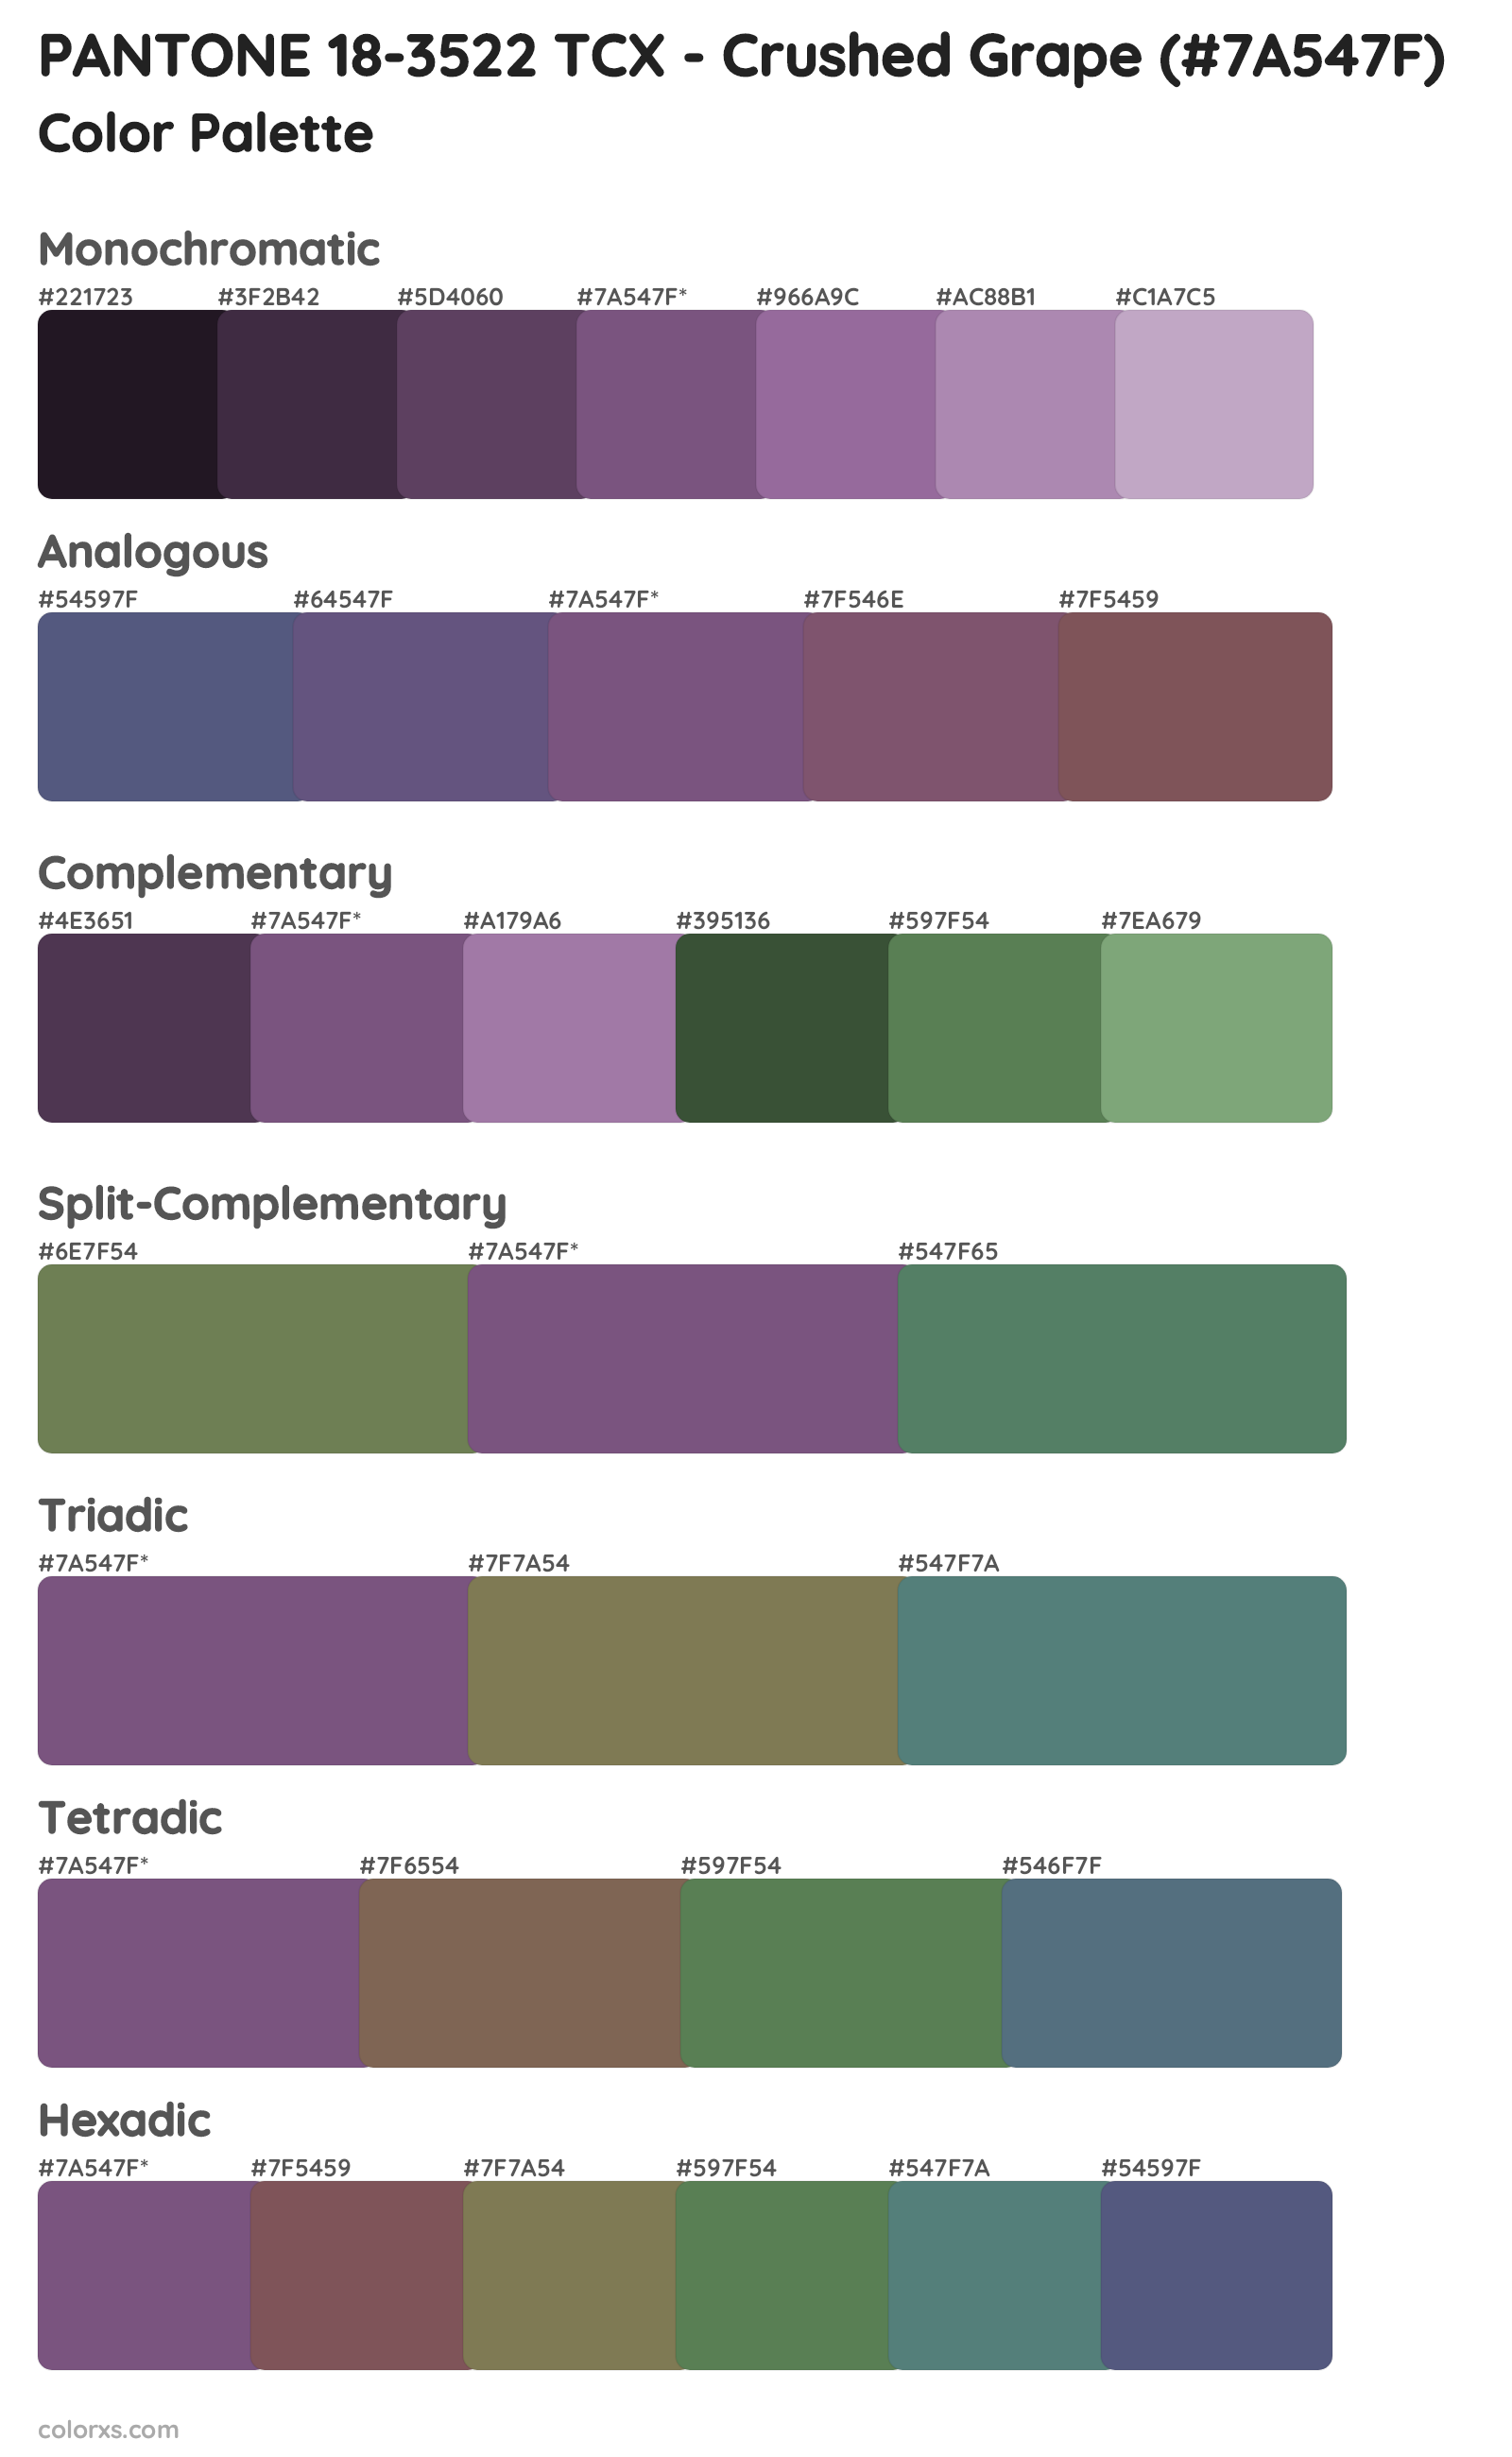 PANTONE 18-3522 TCX - Crushed Grape Color Scheme Palettes